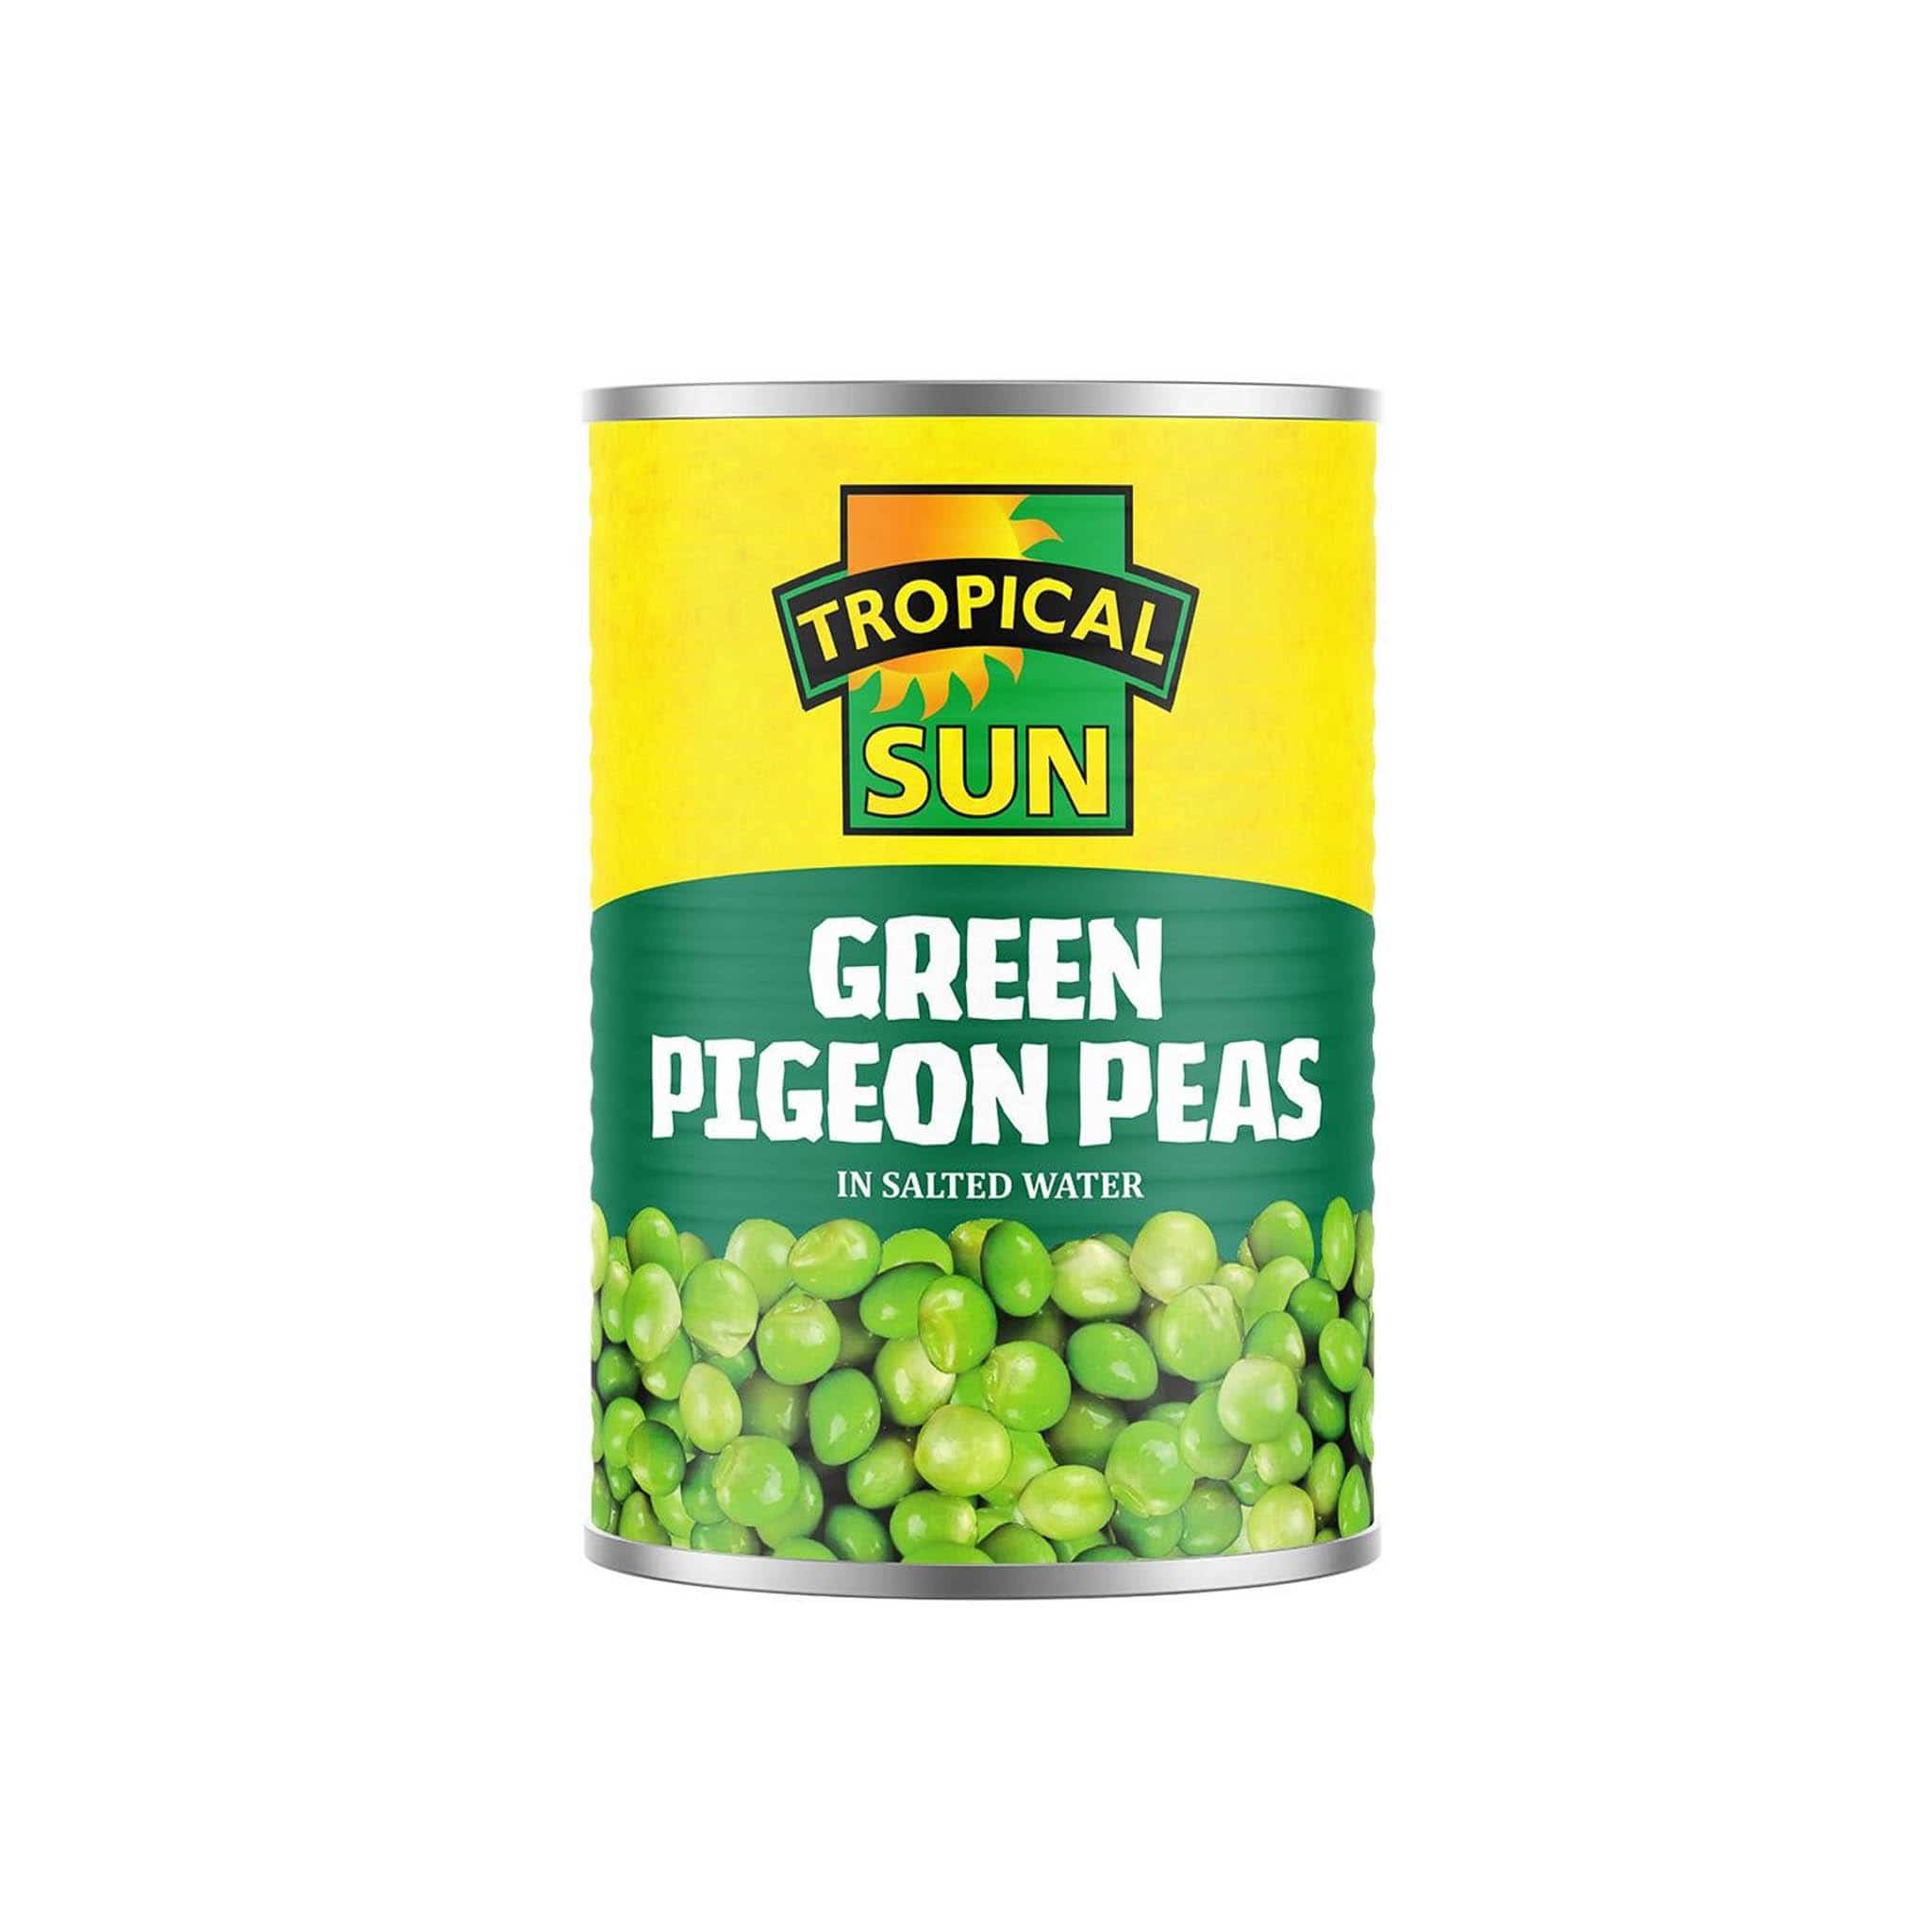 Tropical Sun Green Pigeon Peas, 425g